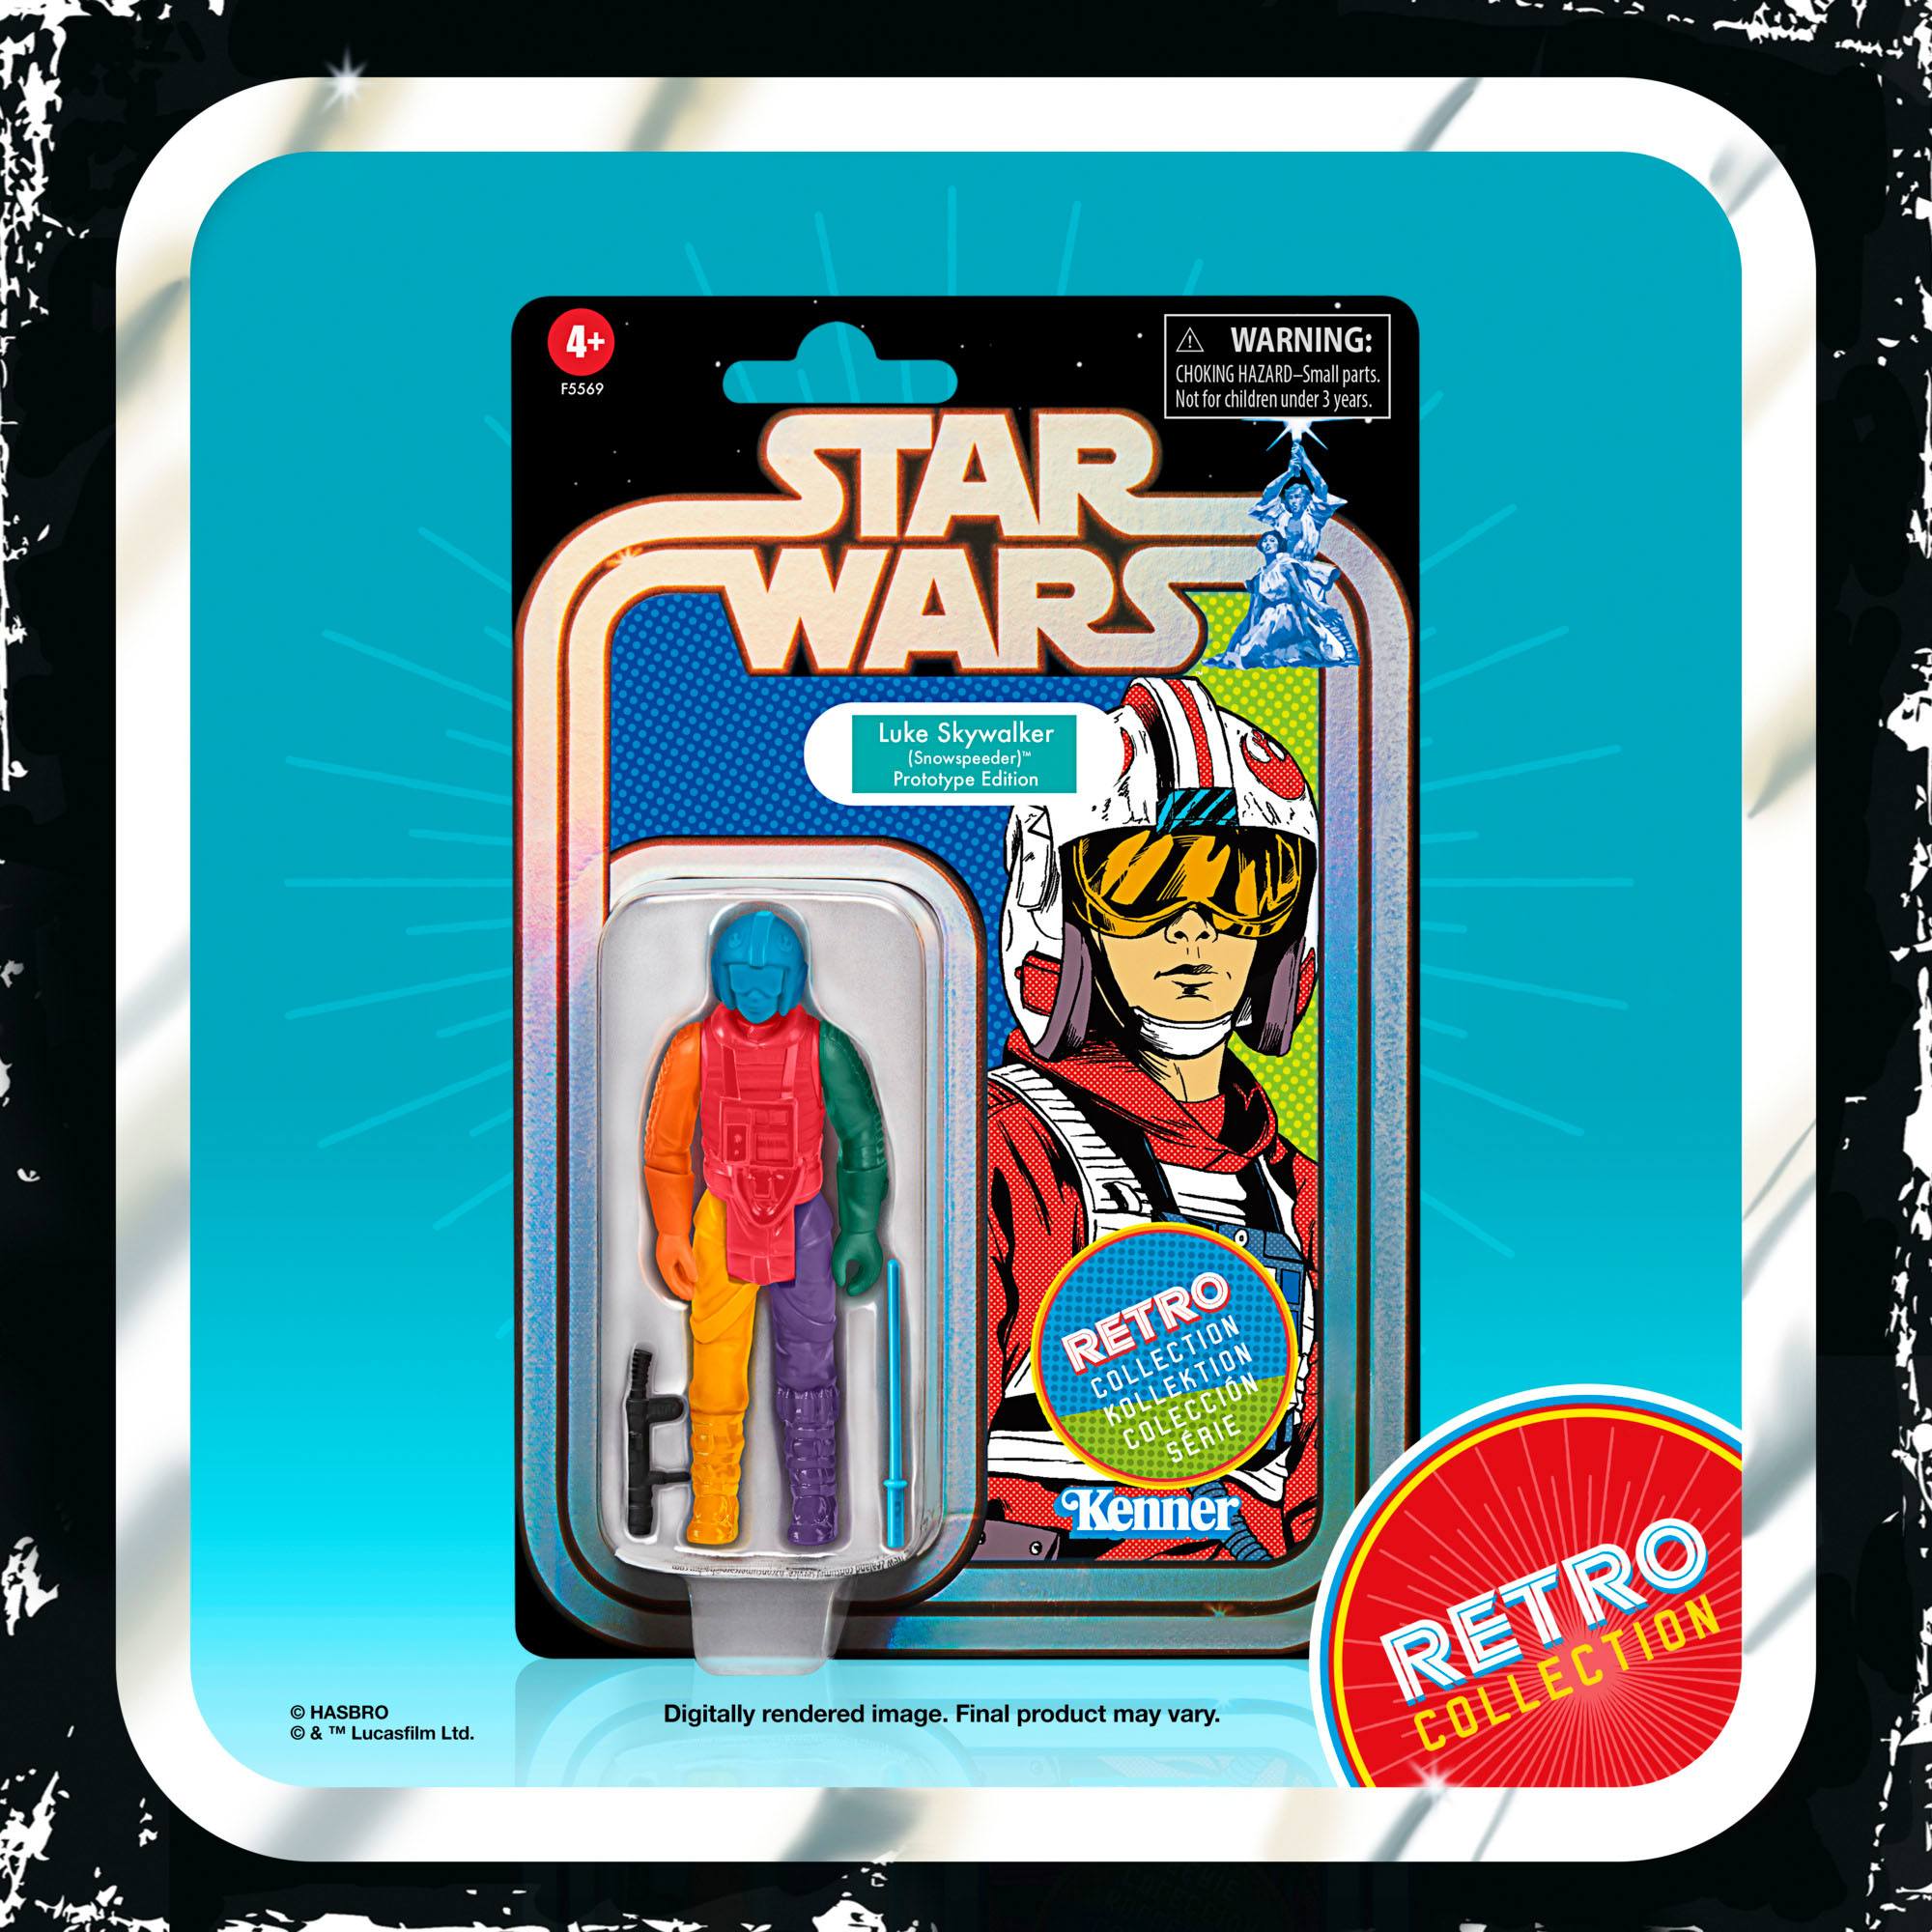 Star Wars Retro Collection Luke Skywalker (Snowspeeder) Prototype Edition F55695L00 5010994150488